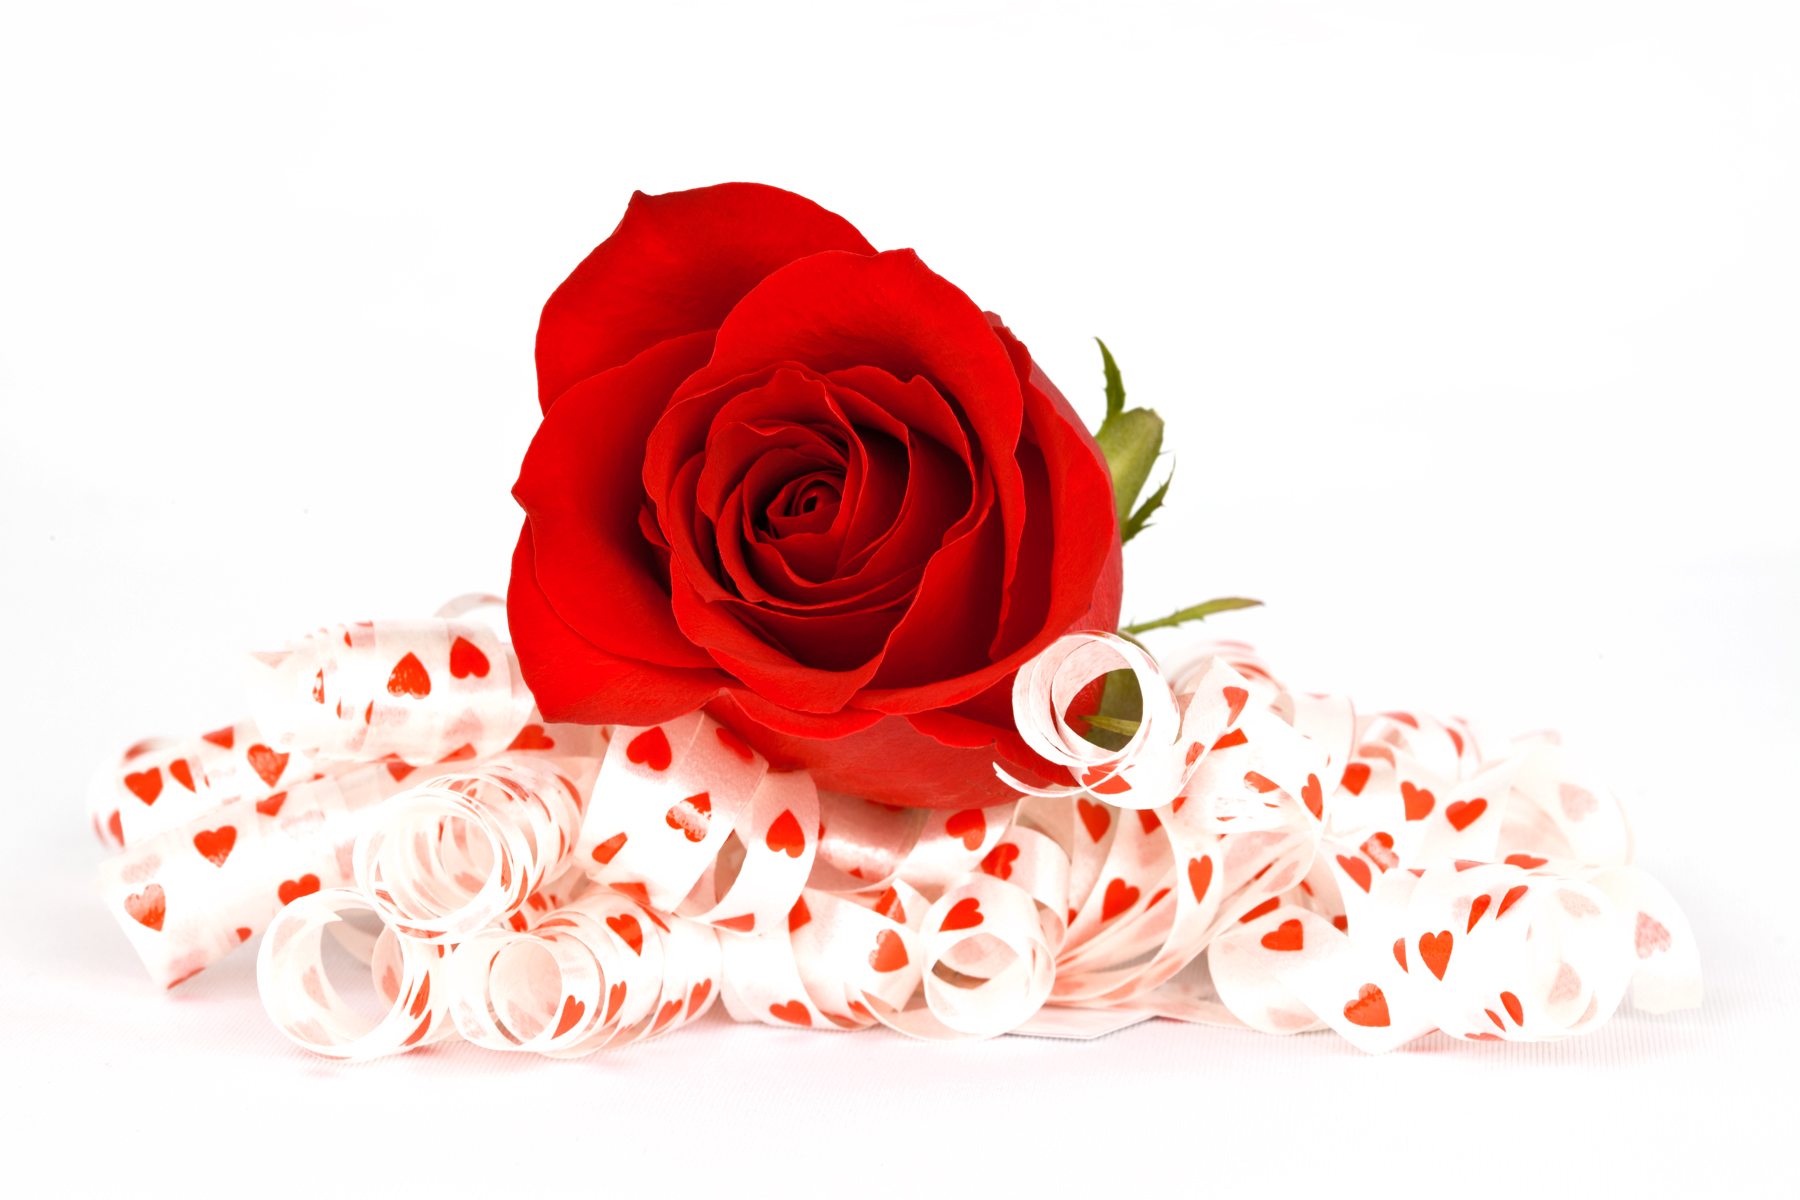 Скачать обои бесплатно Любовь, Роза, Лента, Сердце, Красная Роза, Художественные картинка на рабочий стол ПК